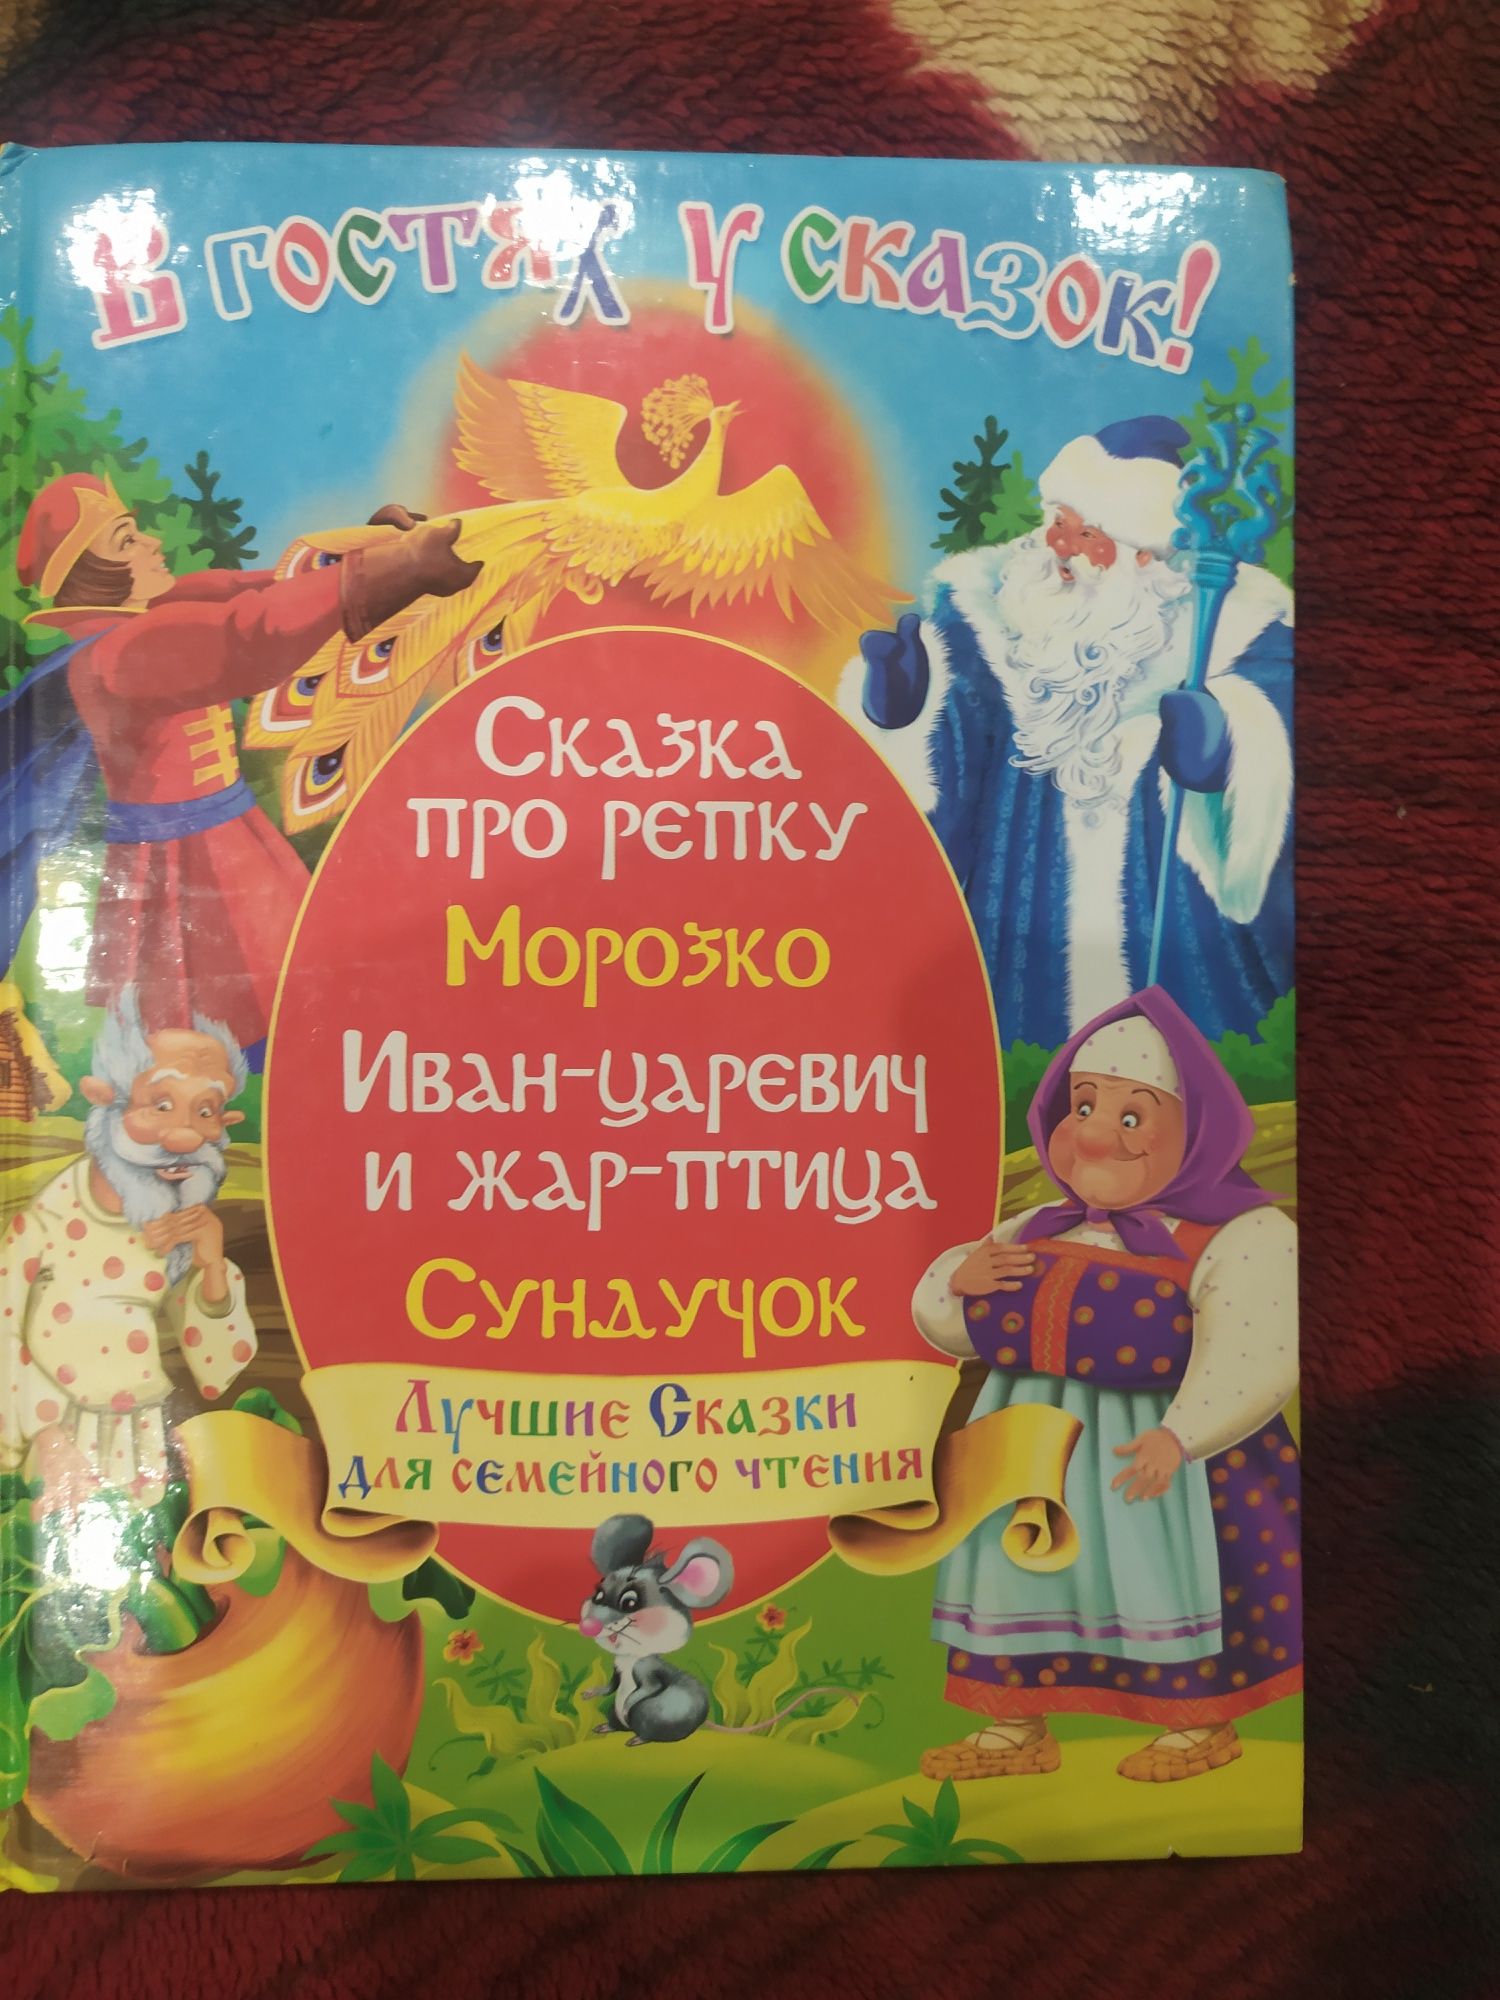 Продам детскую книгу сказок, бесплатная ОЛХ доставка УкрПочтой